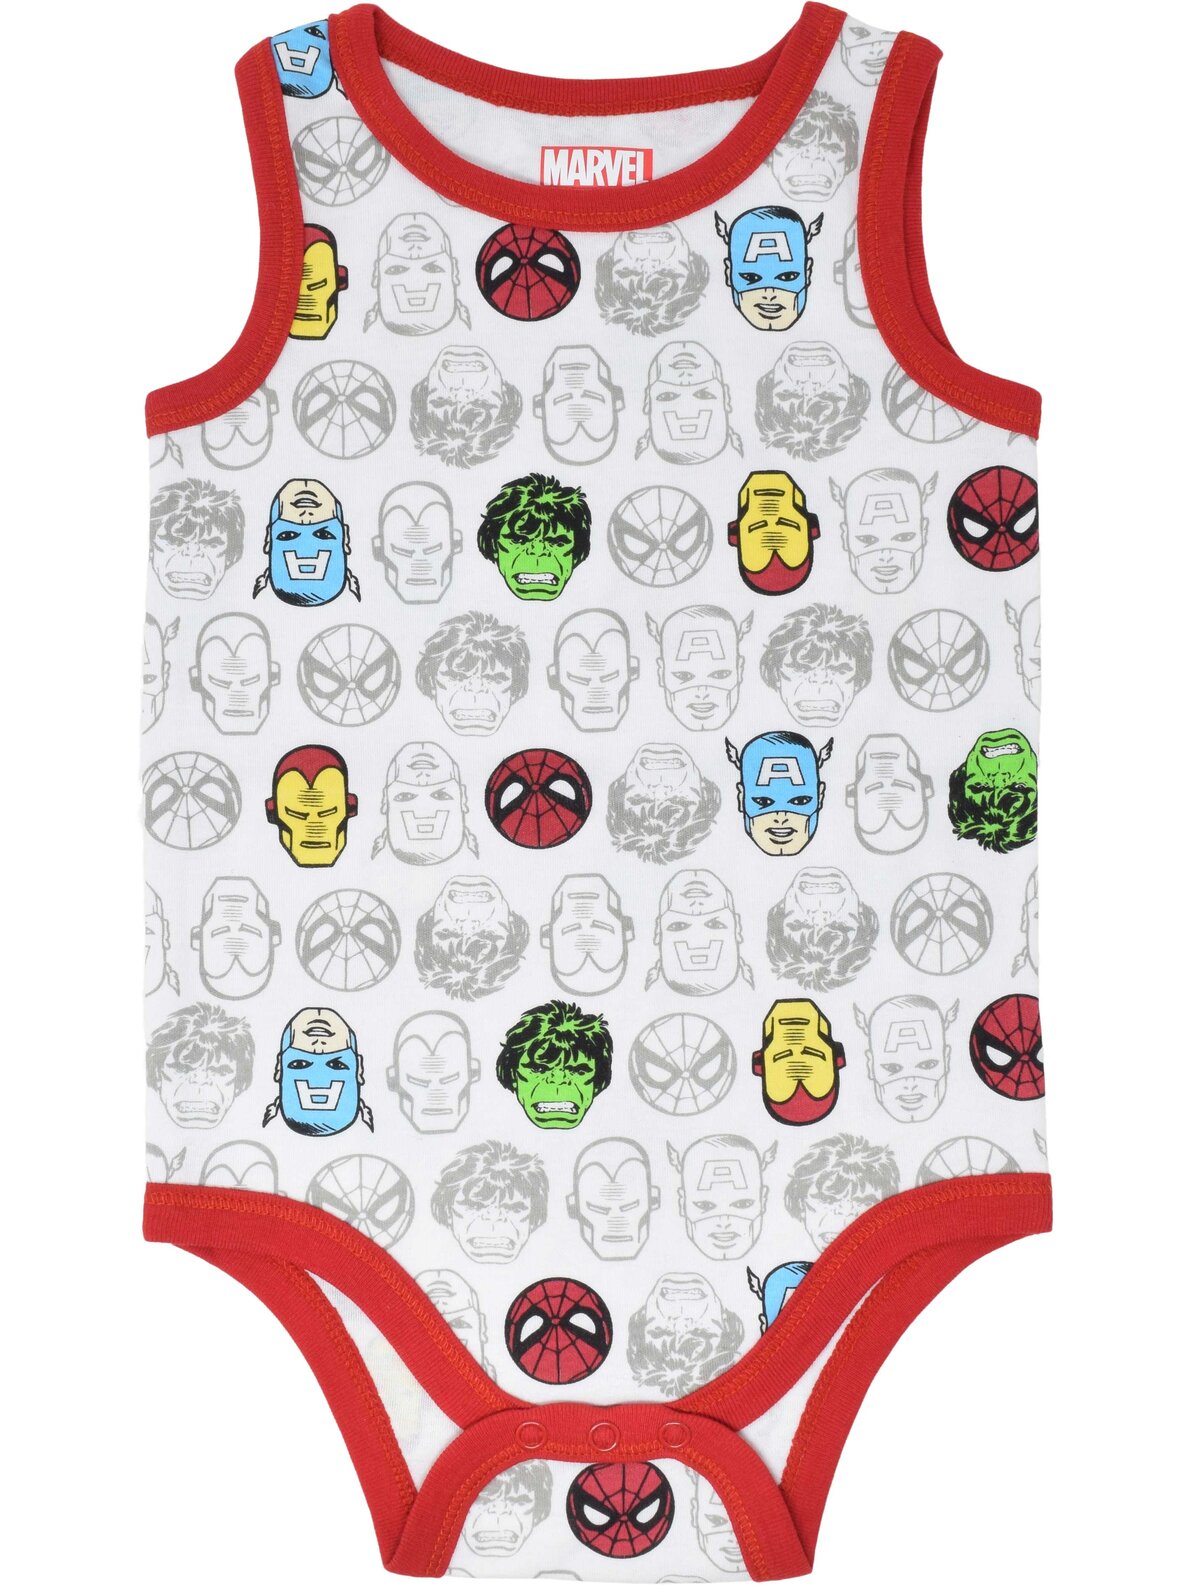 Marvel Avengers 5 Pack Bodysuits